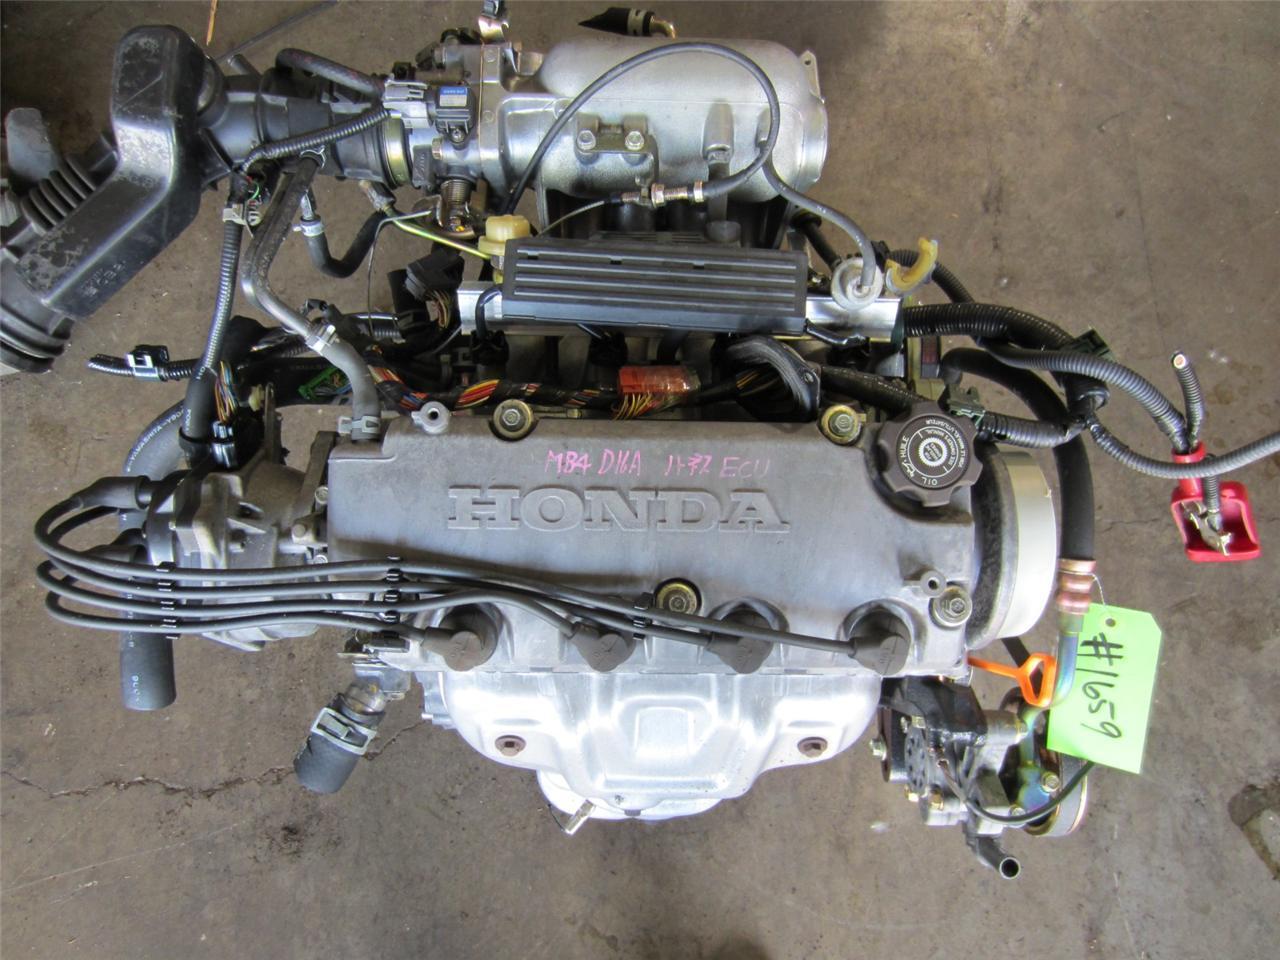 Honda civic used japanese engines